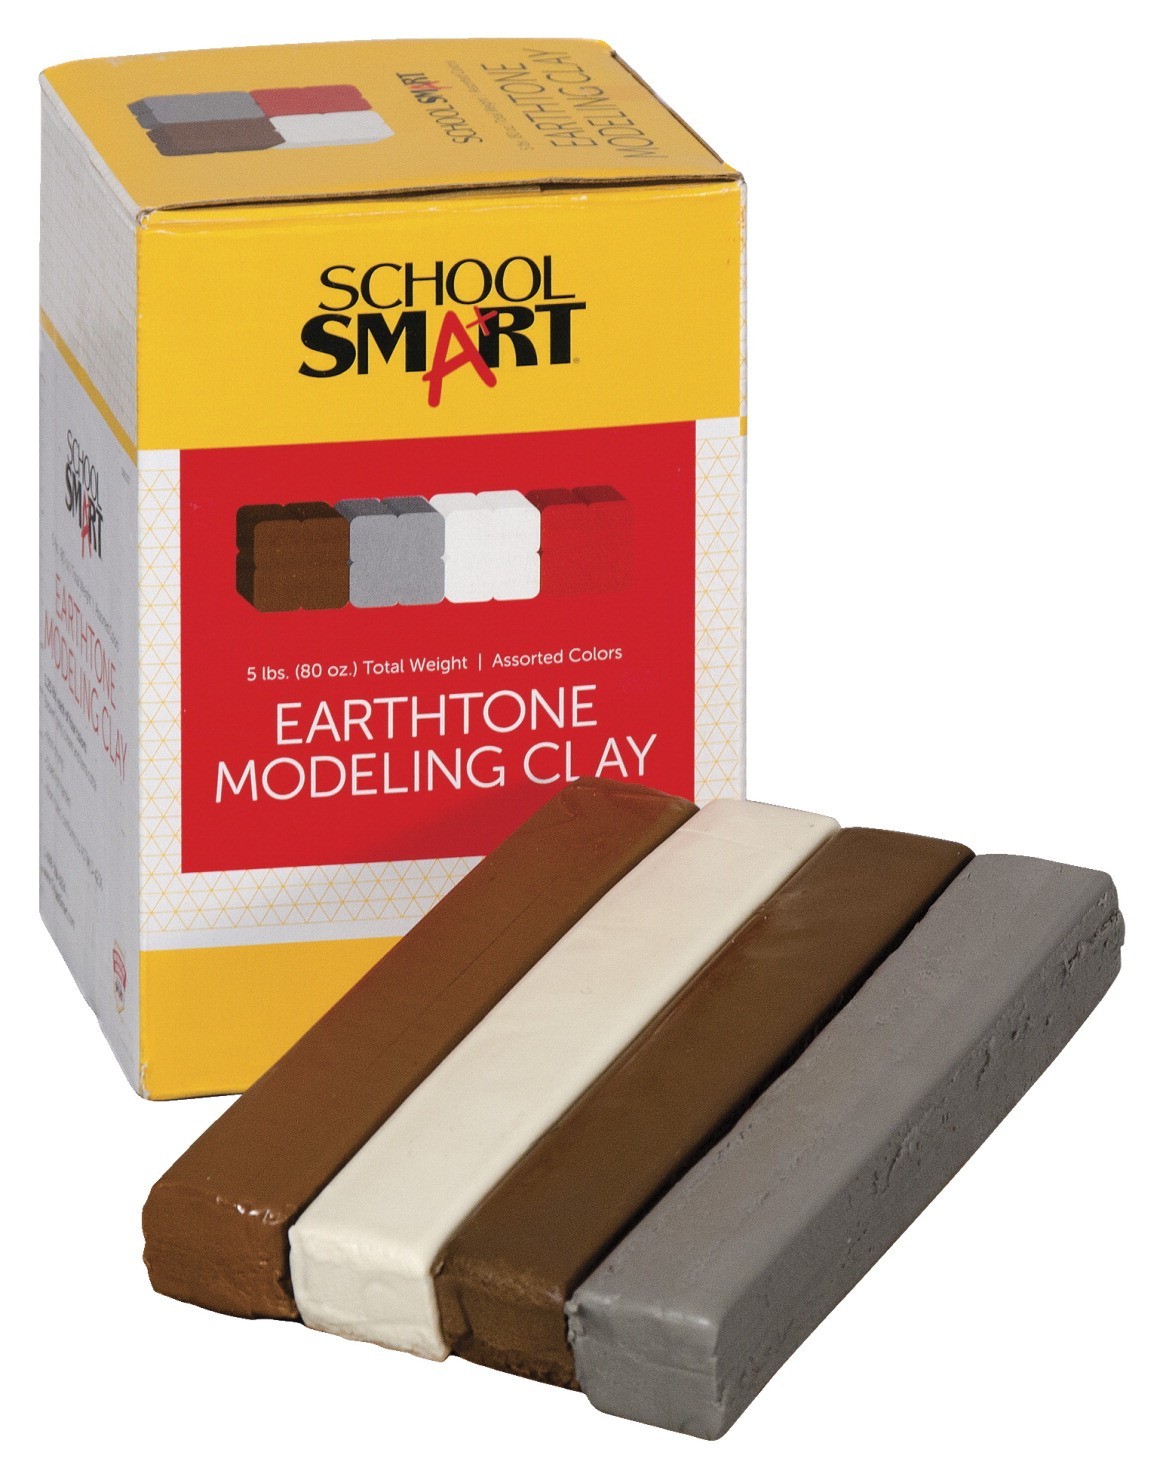 School Smart Non-Toxic Modeling Clay Set, 5 lb, Earthtone Colors